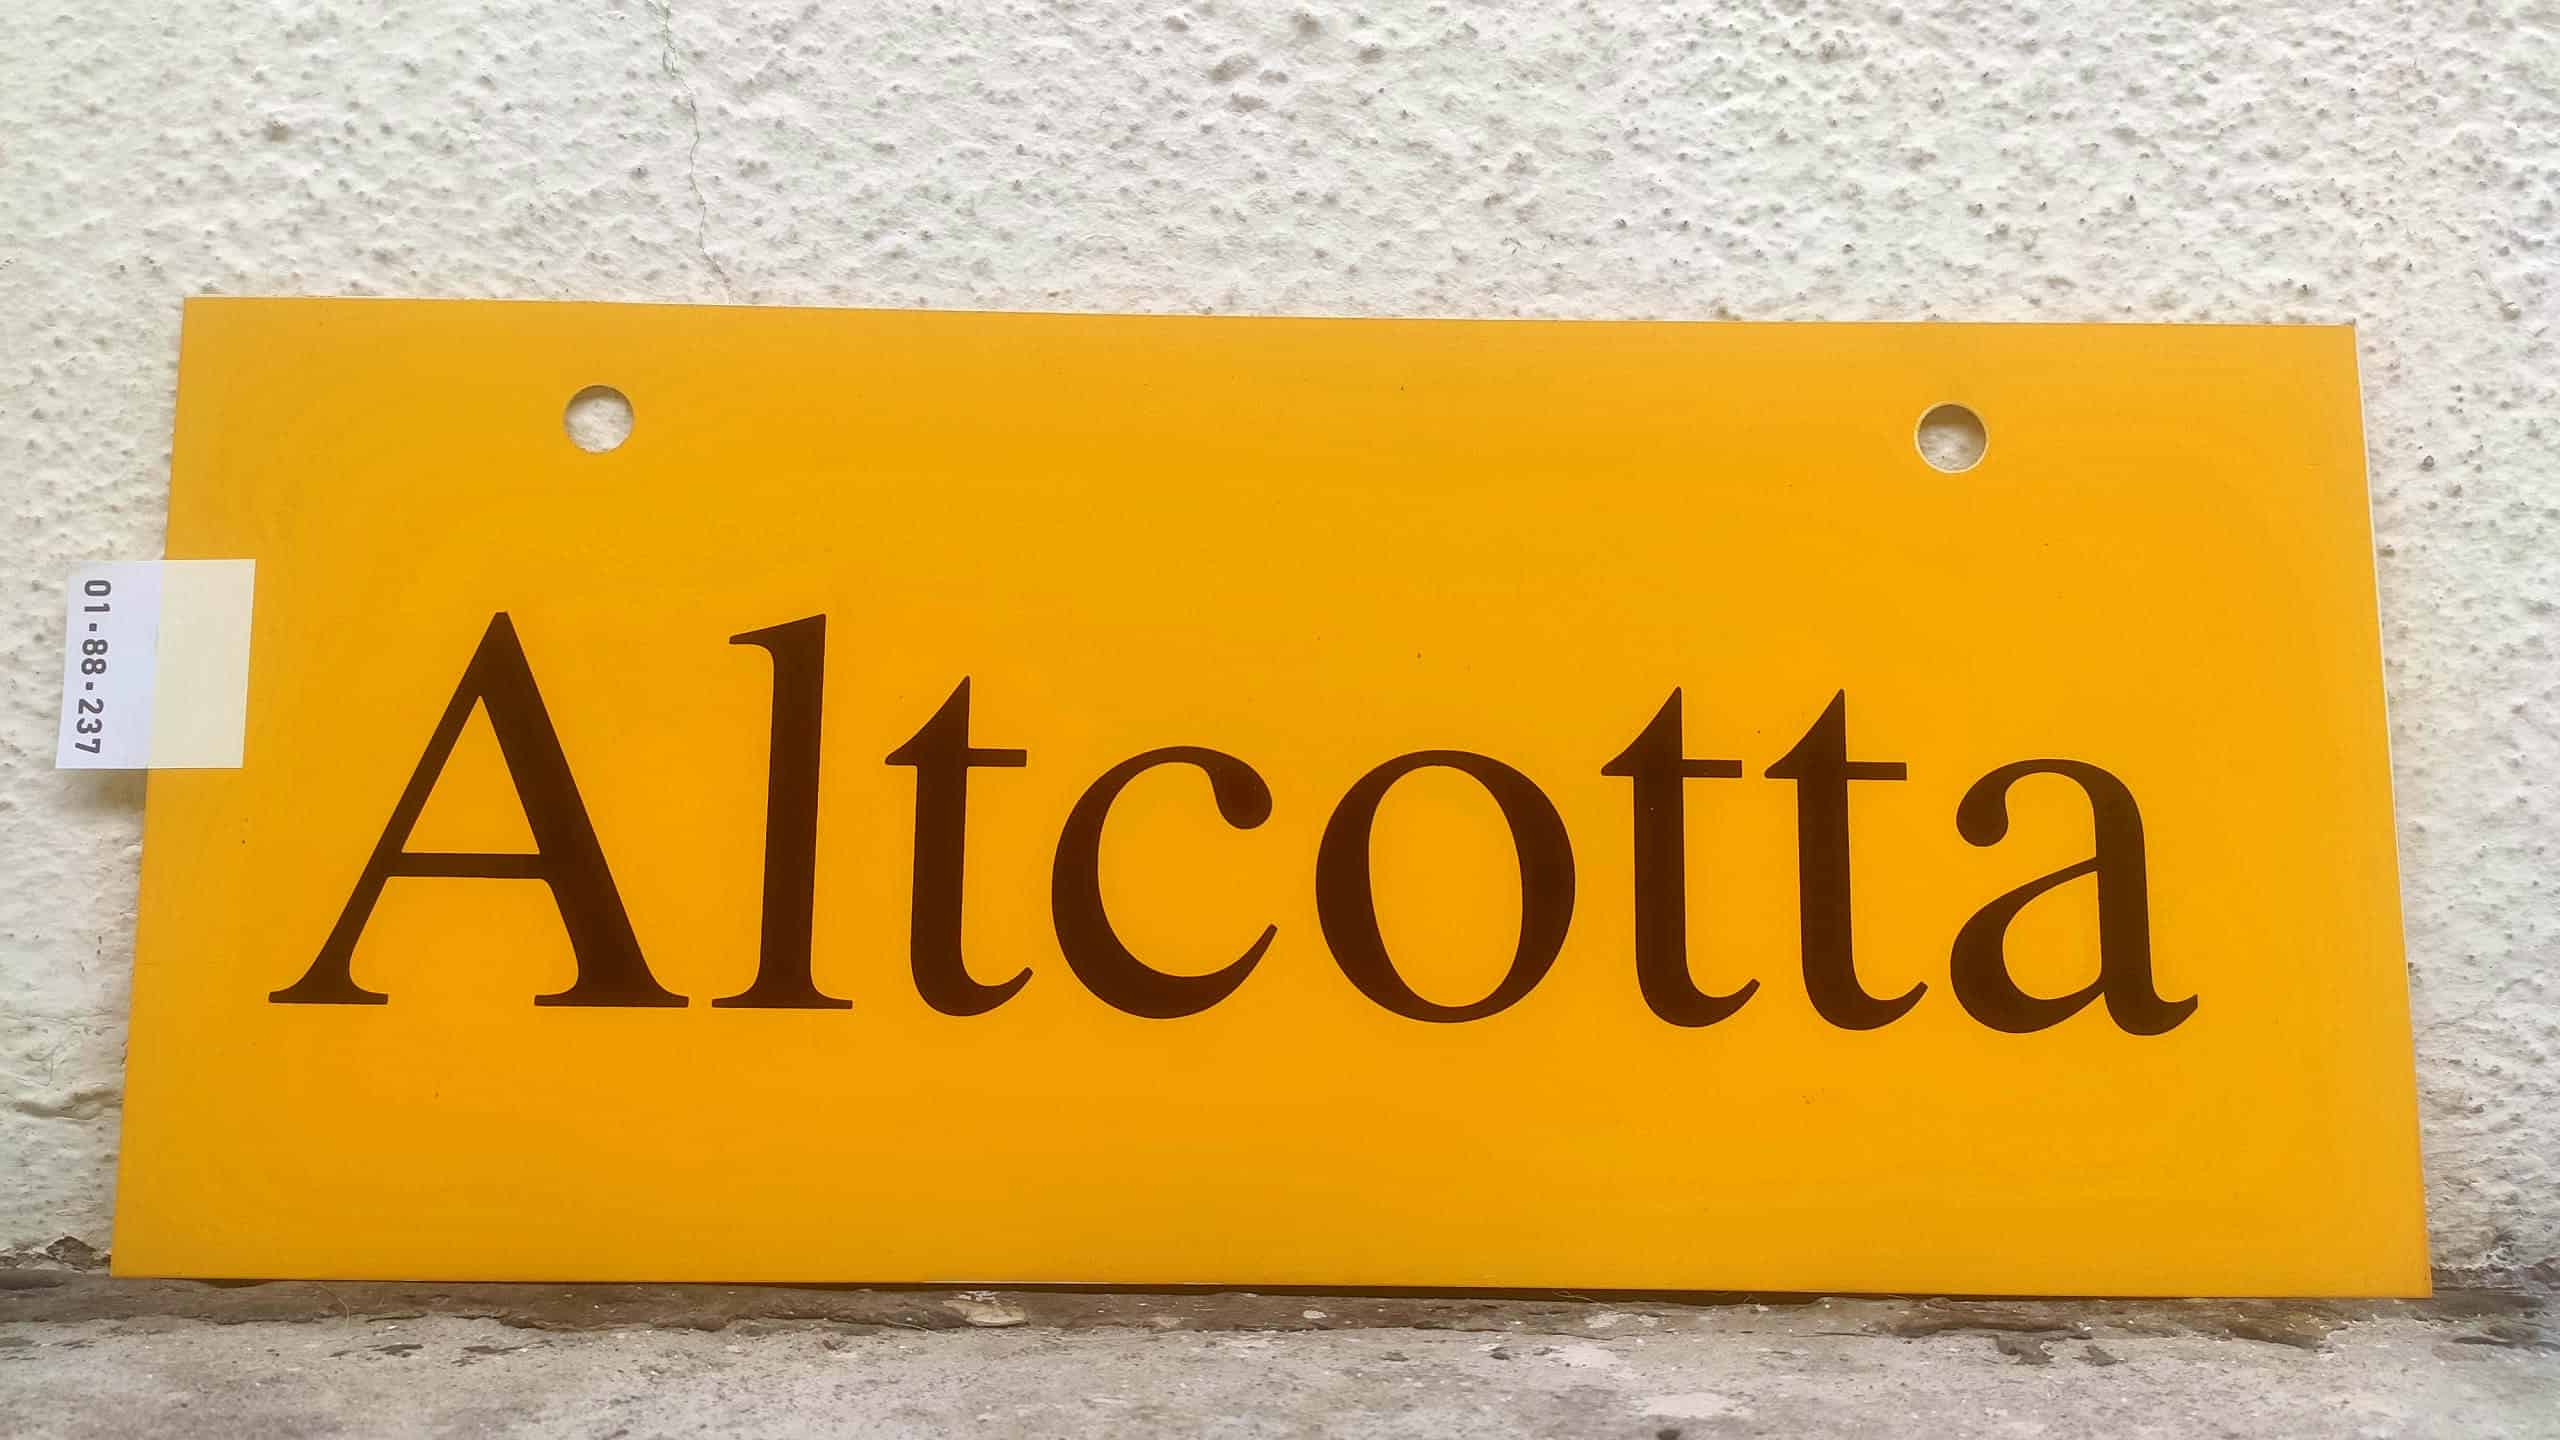 Altcotta